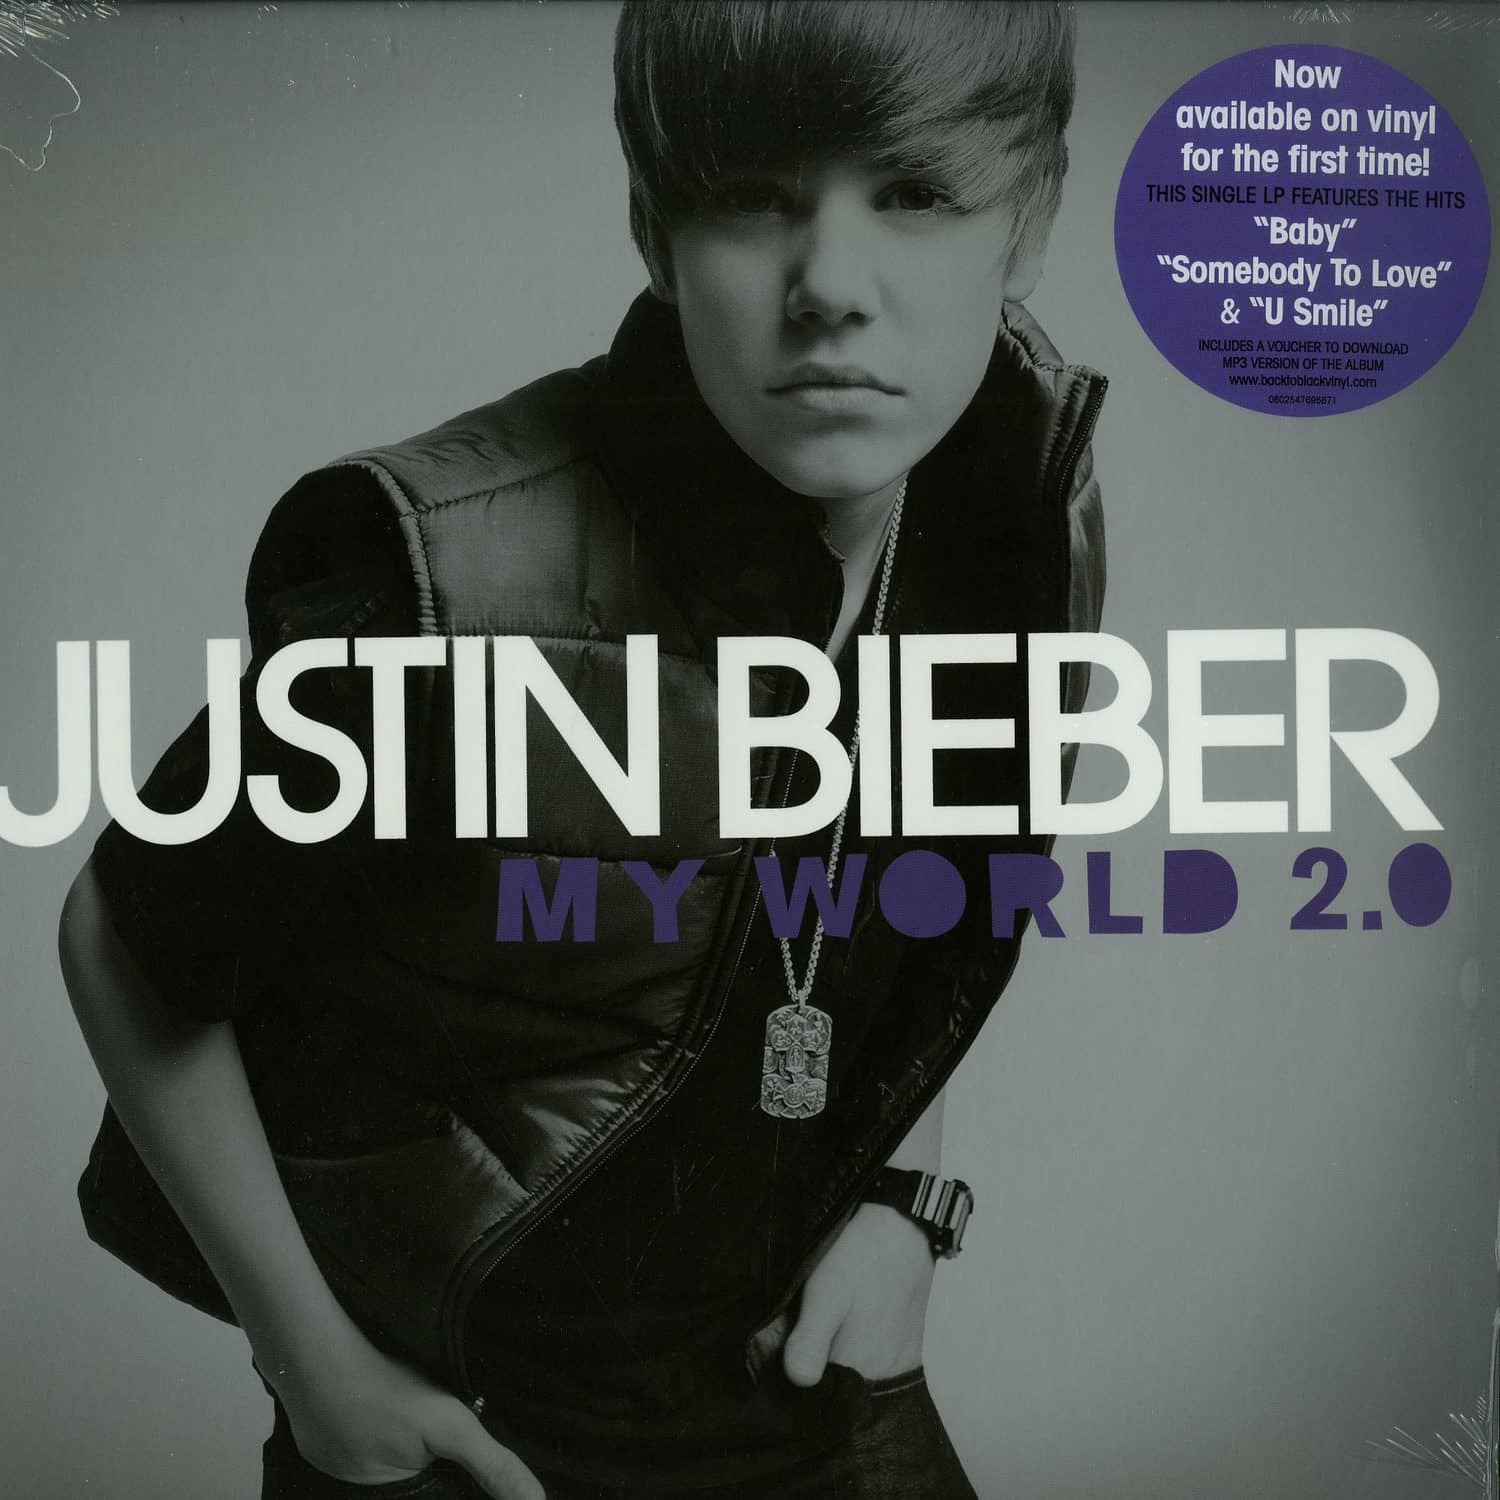 Justin Bieber - MY WORLD 2.0 